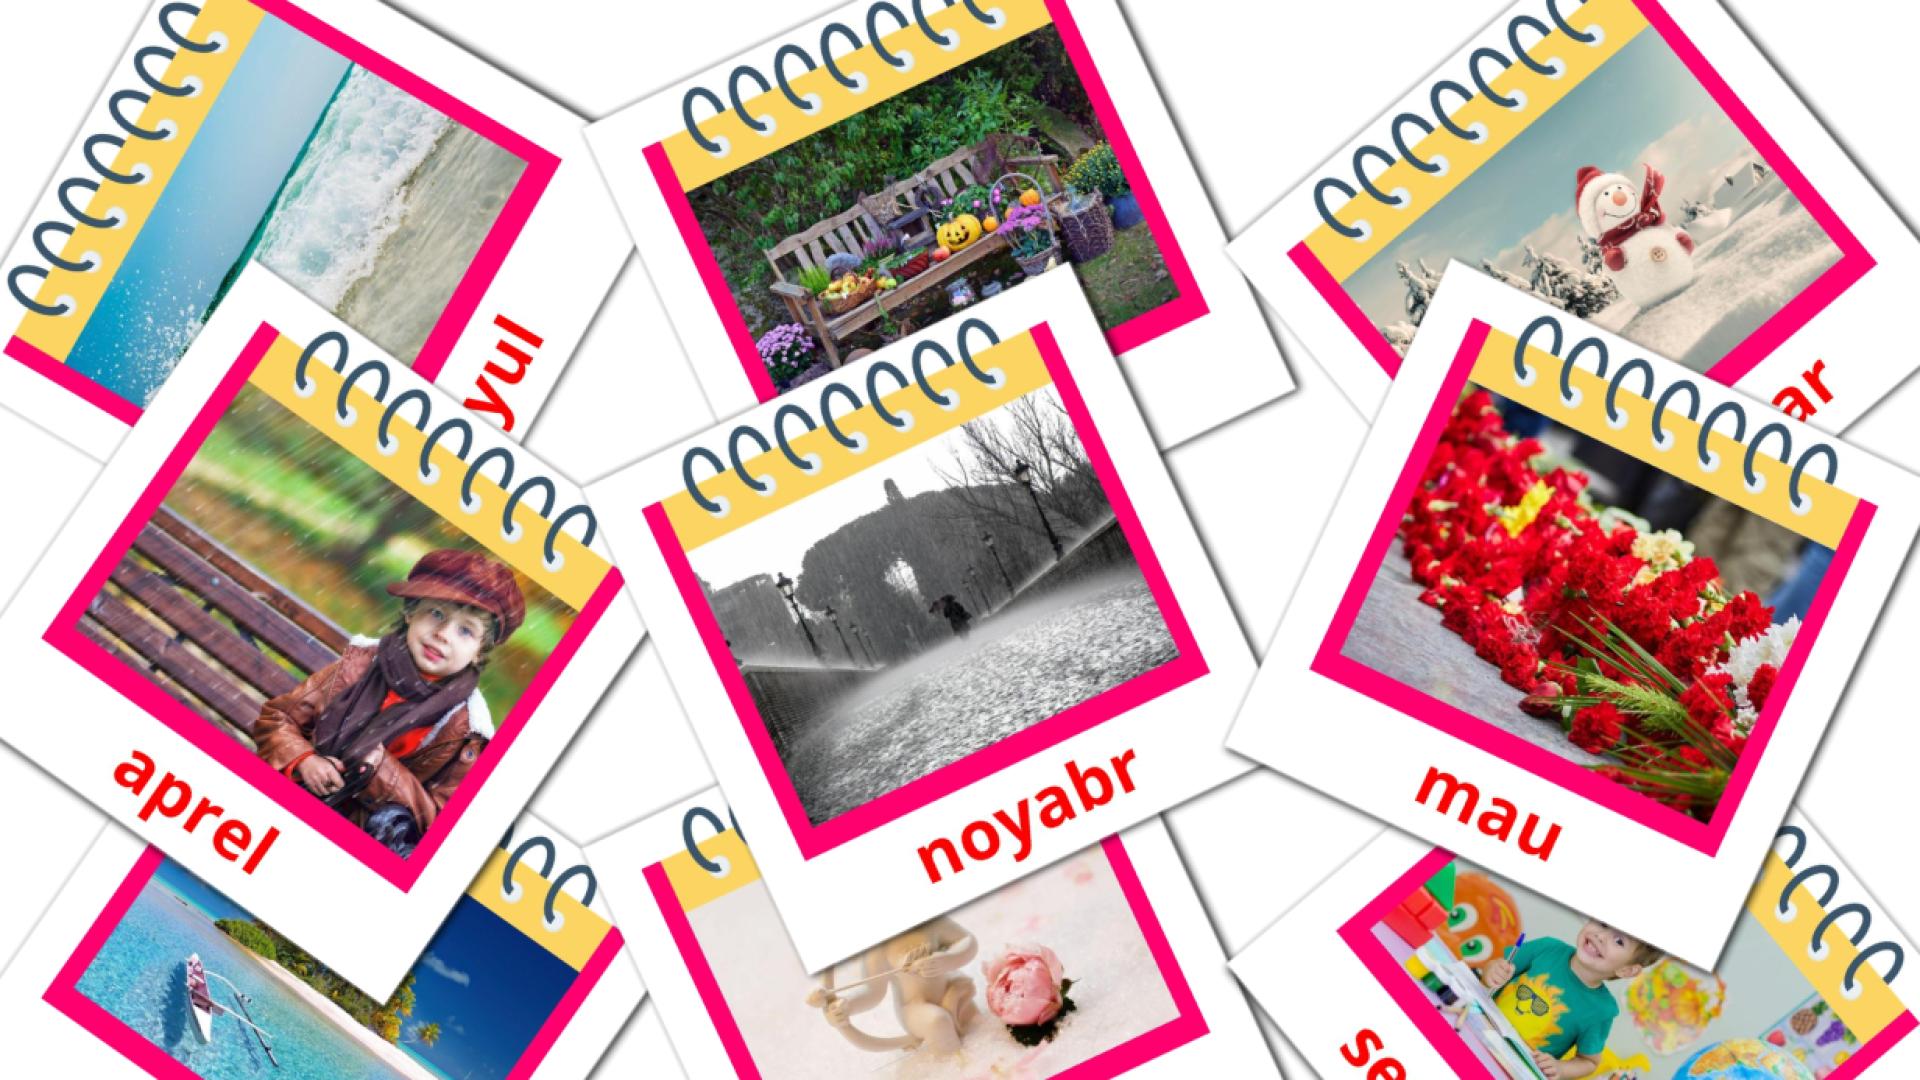 12 Yil oylari flashcards